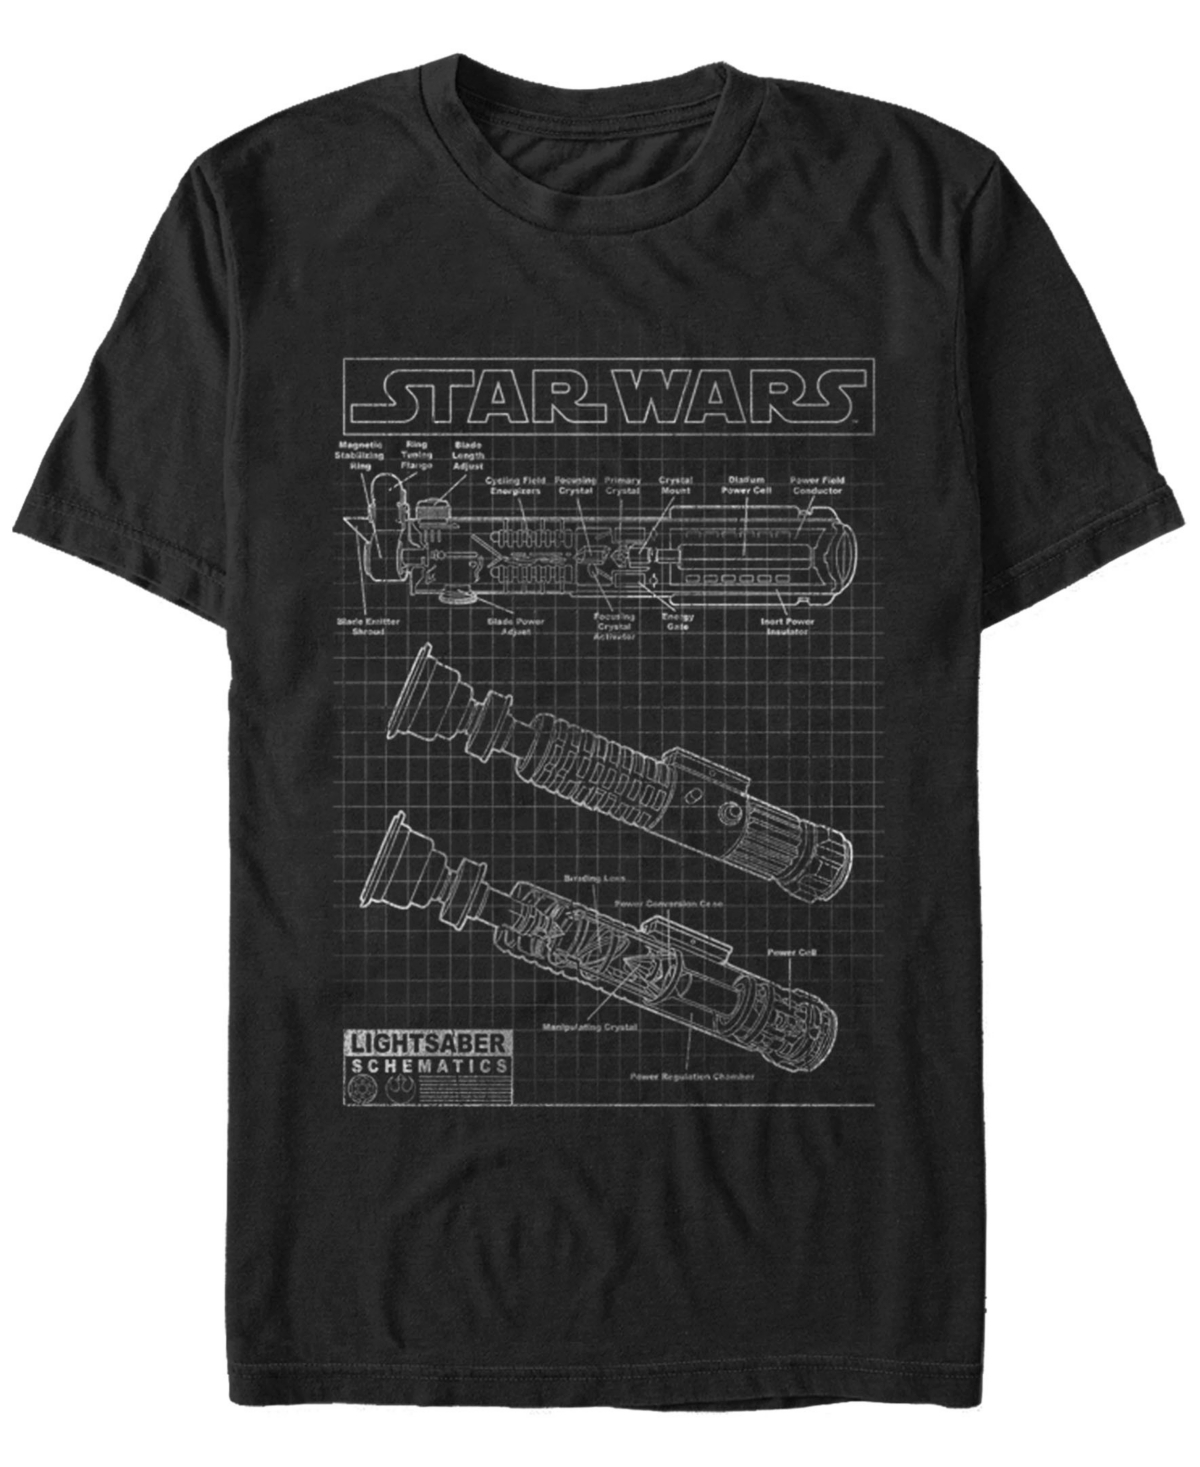 Star Wars Men's Classic Lightsaber Schematics Short Sleeve T-Shirt - Black